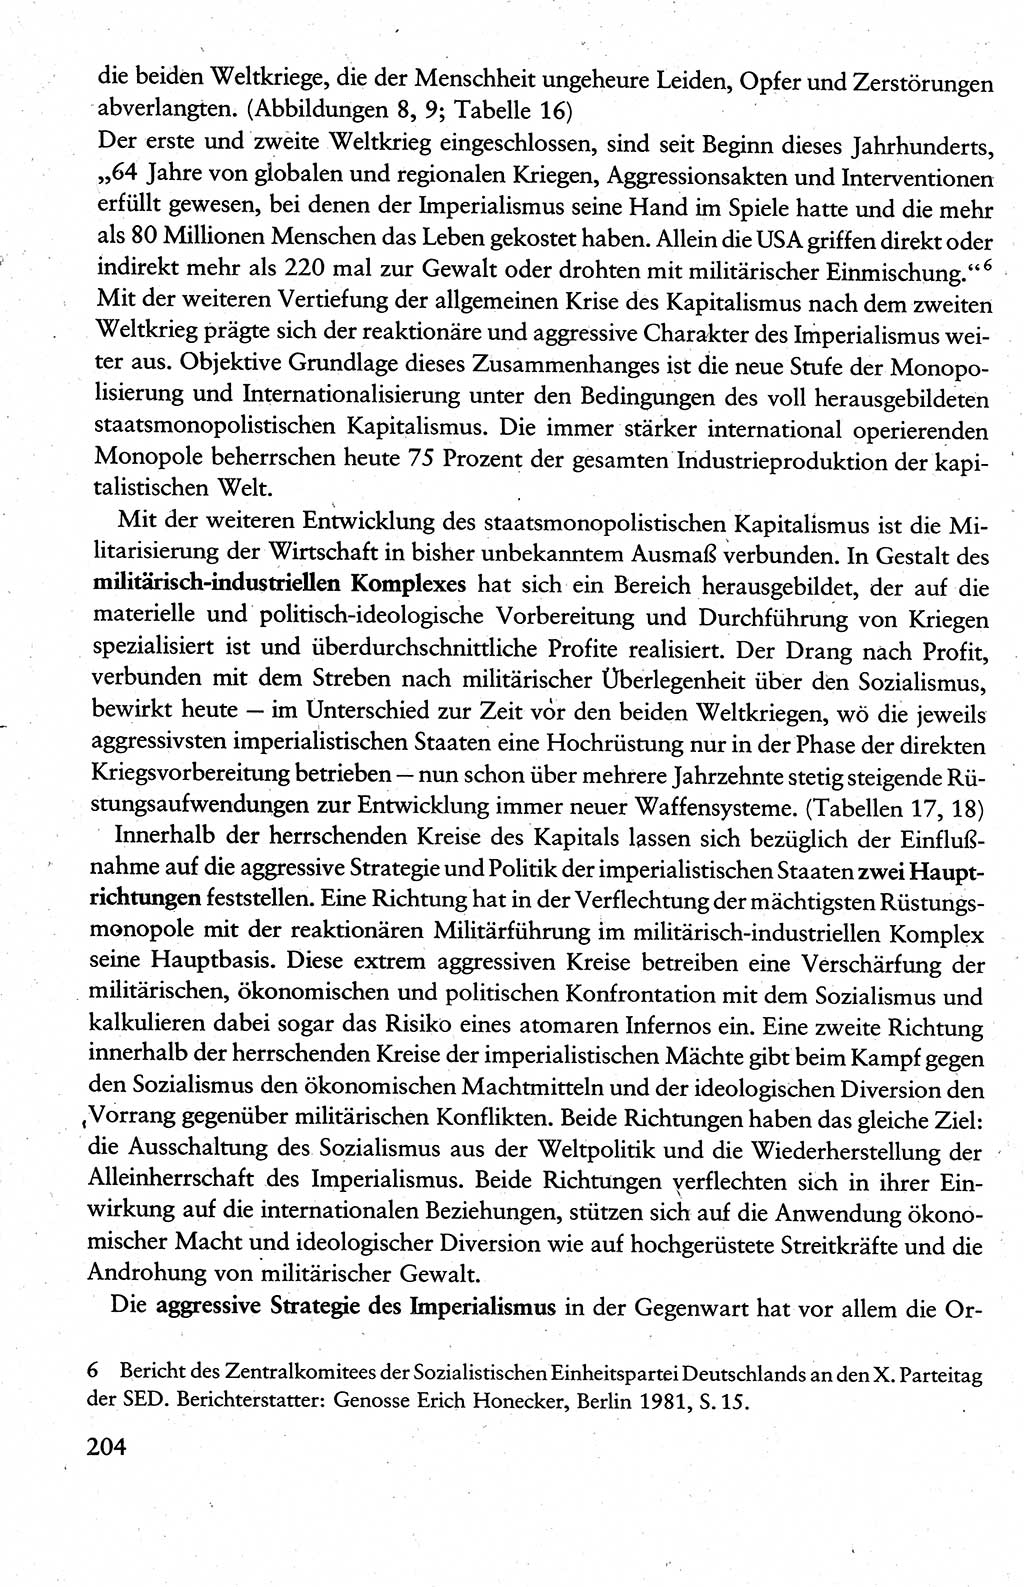 Wissenschaftlicher Kommunismus [Deutsche Demokratische Republik (DDR)], Lehrbuch für das marxistisch-leninistische Grundlagenstudium 1983, Seite 204 (Wiss. Komm. DDR Lb. 1983, S. 204)